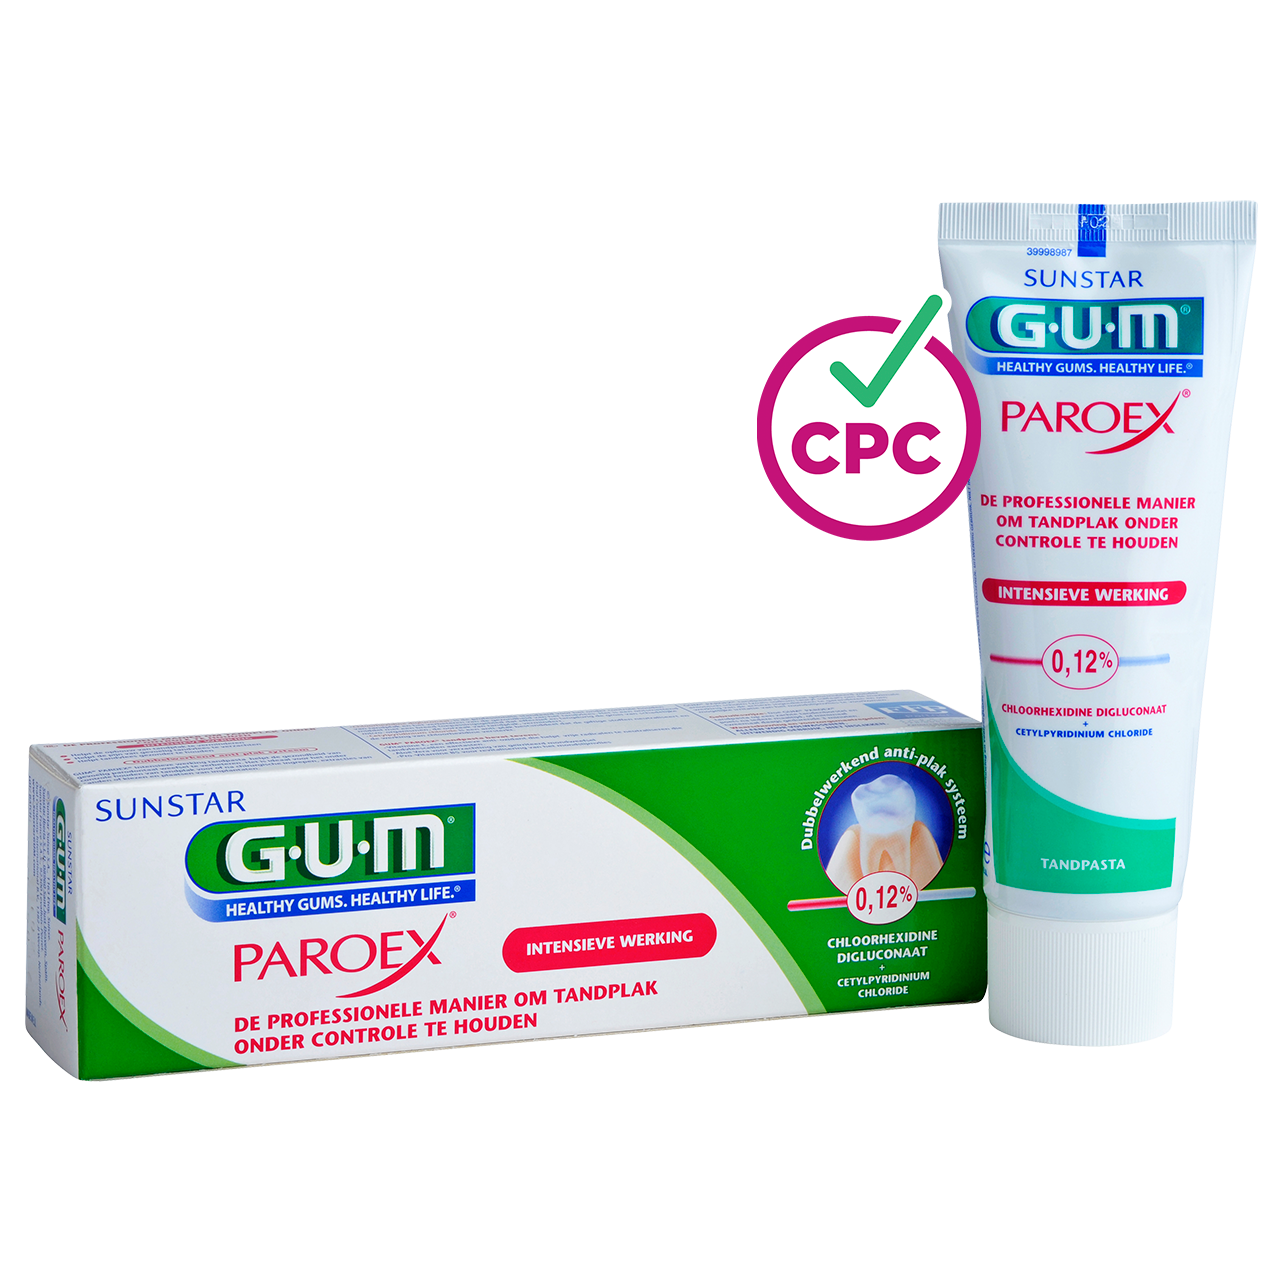 P1790-NL-GUM-PAROEX-012-Toothpaste-75ml-Box-Tube-CPC